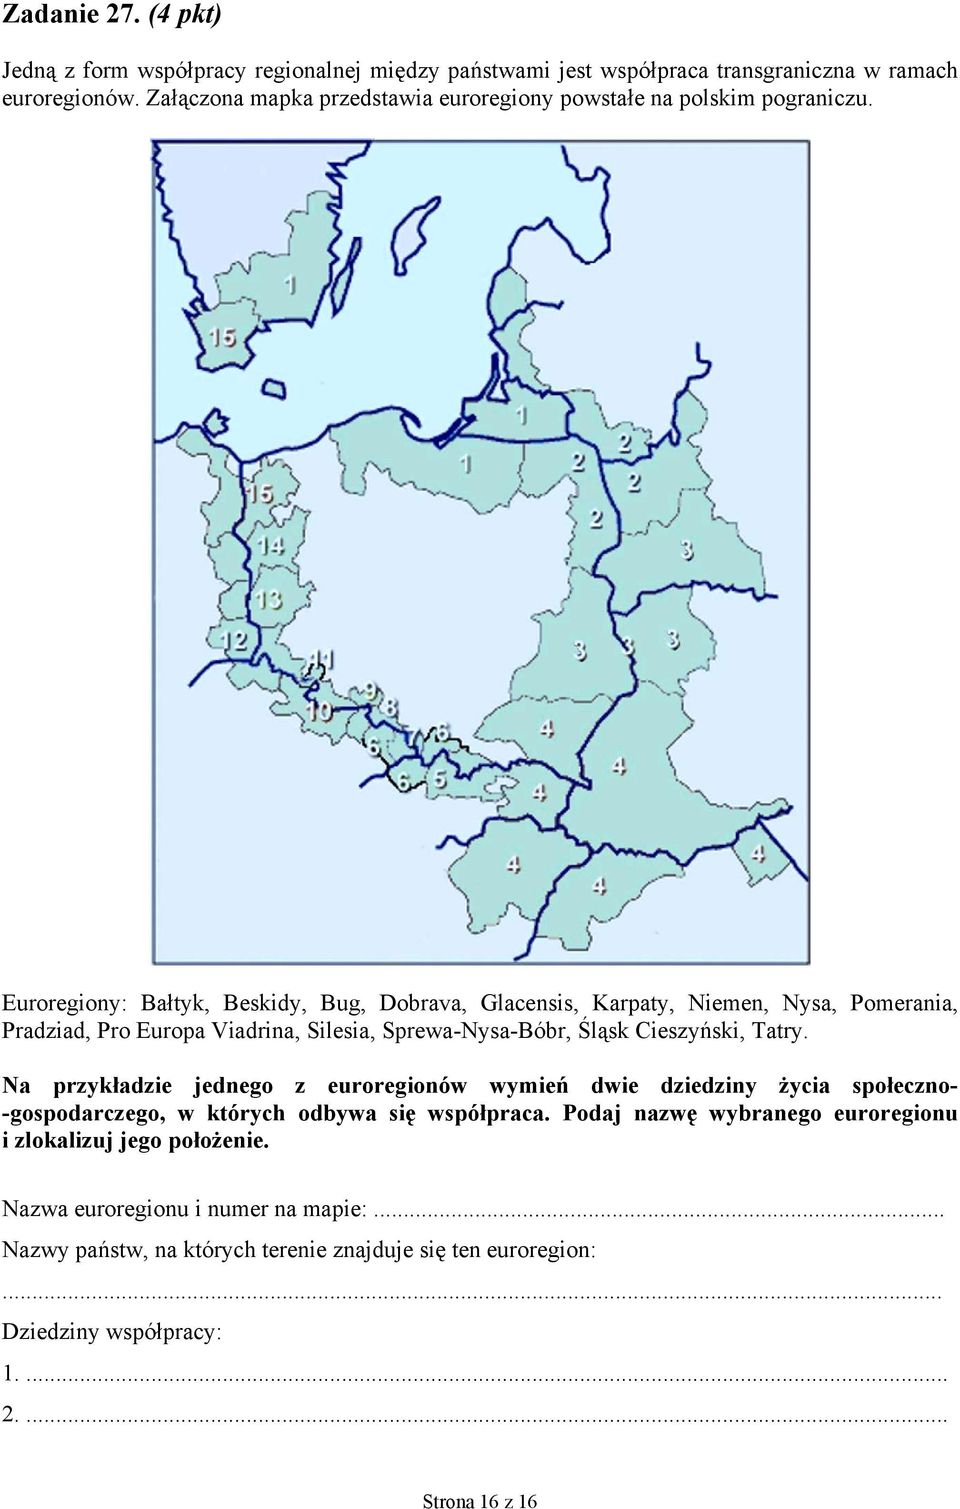 Euroregiony: Bałtyk, Beskidy, Bug, Dobrava, Glacensis, Karpaty, Niemen, Nysa, Pomerania, Pradziad, Pro Europa Viadrina, Silesia, Sprewa-Nysa-Bóbr, Śląsk Cieszyński, Tatry.